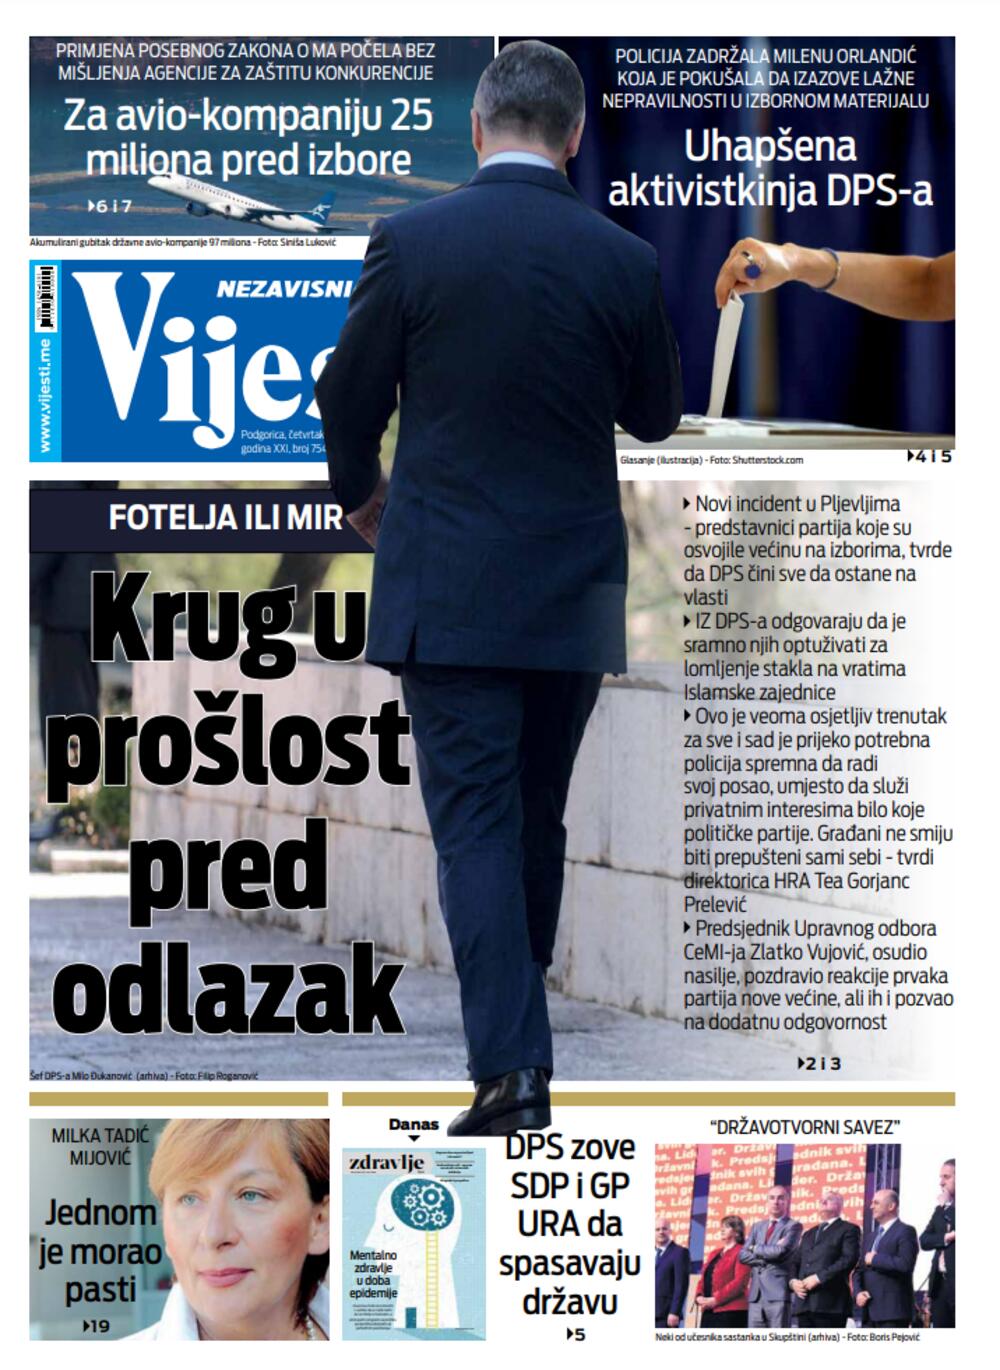 Naslovna strana "Vijesti" za treći septembar, Foto: Vijesti